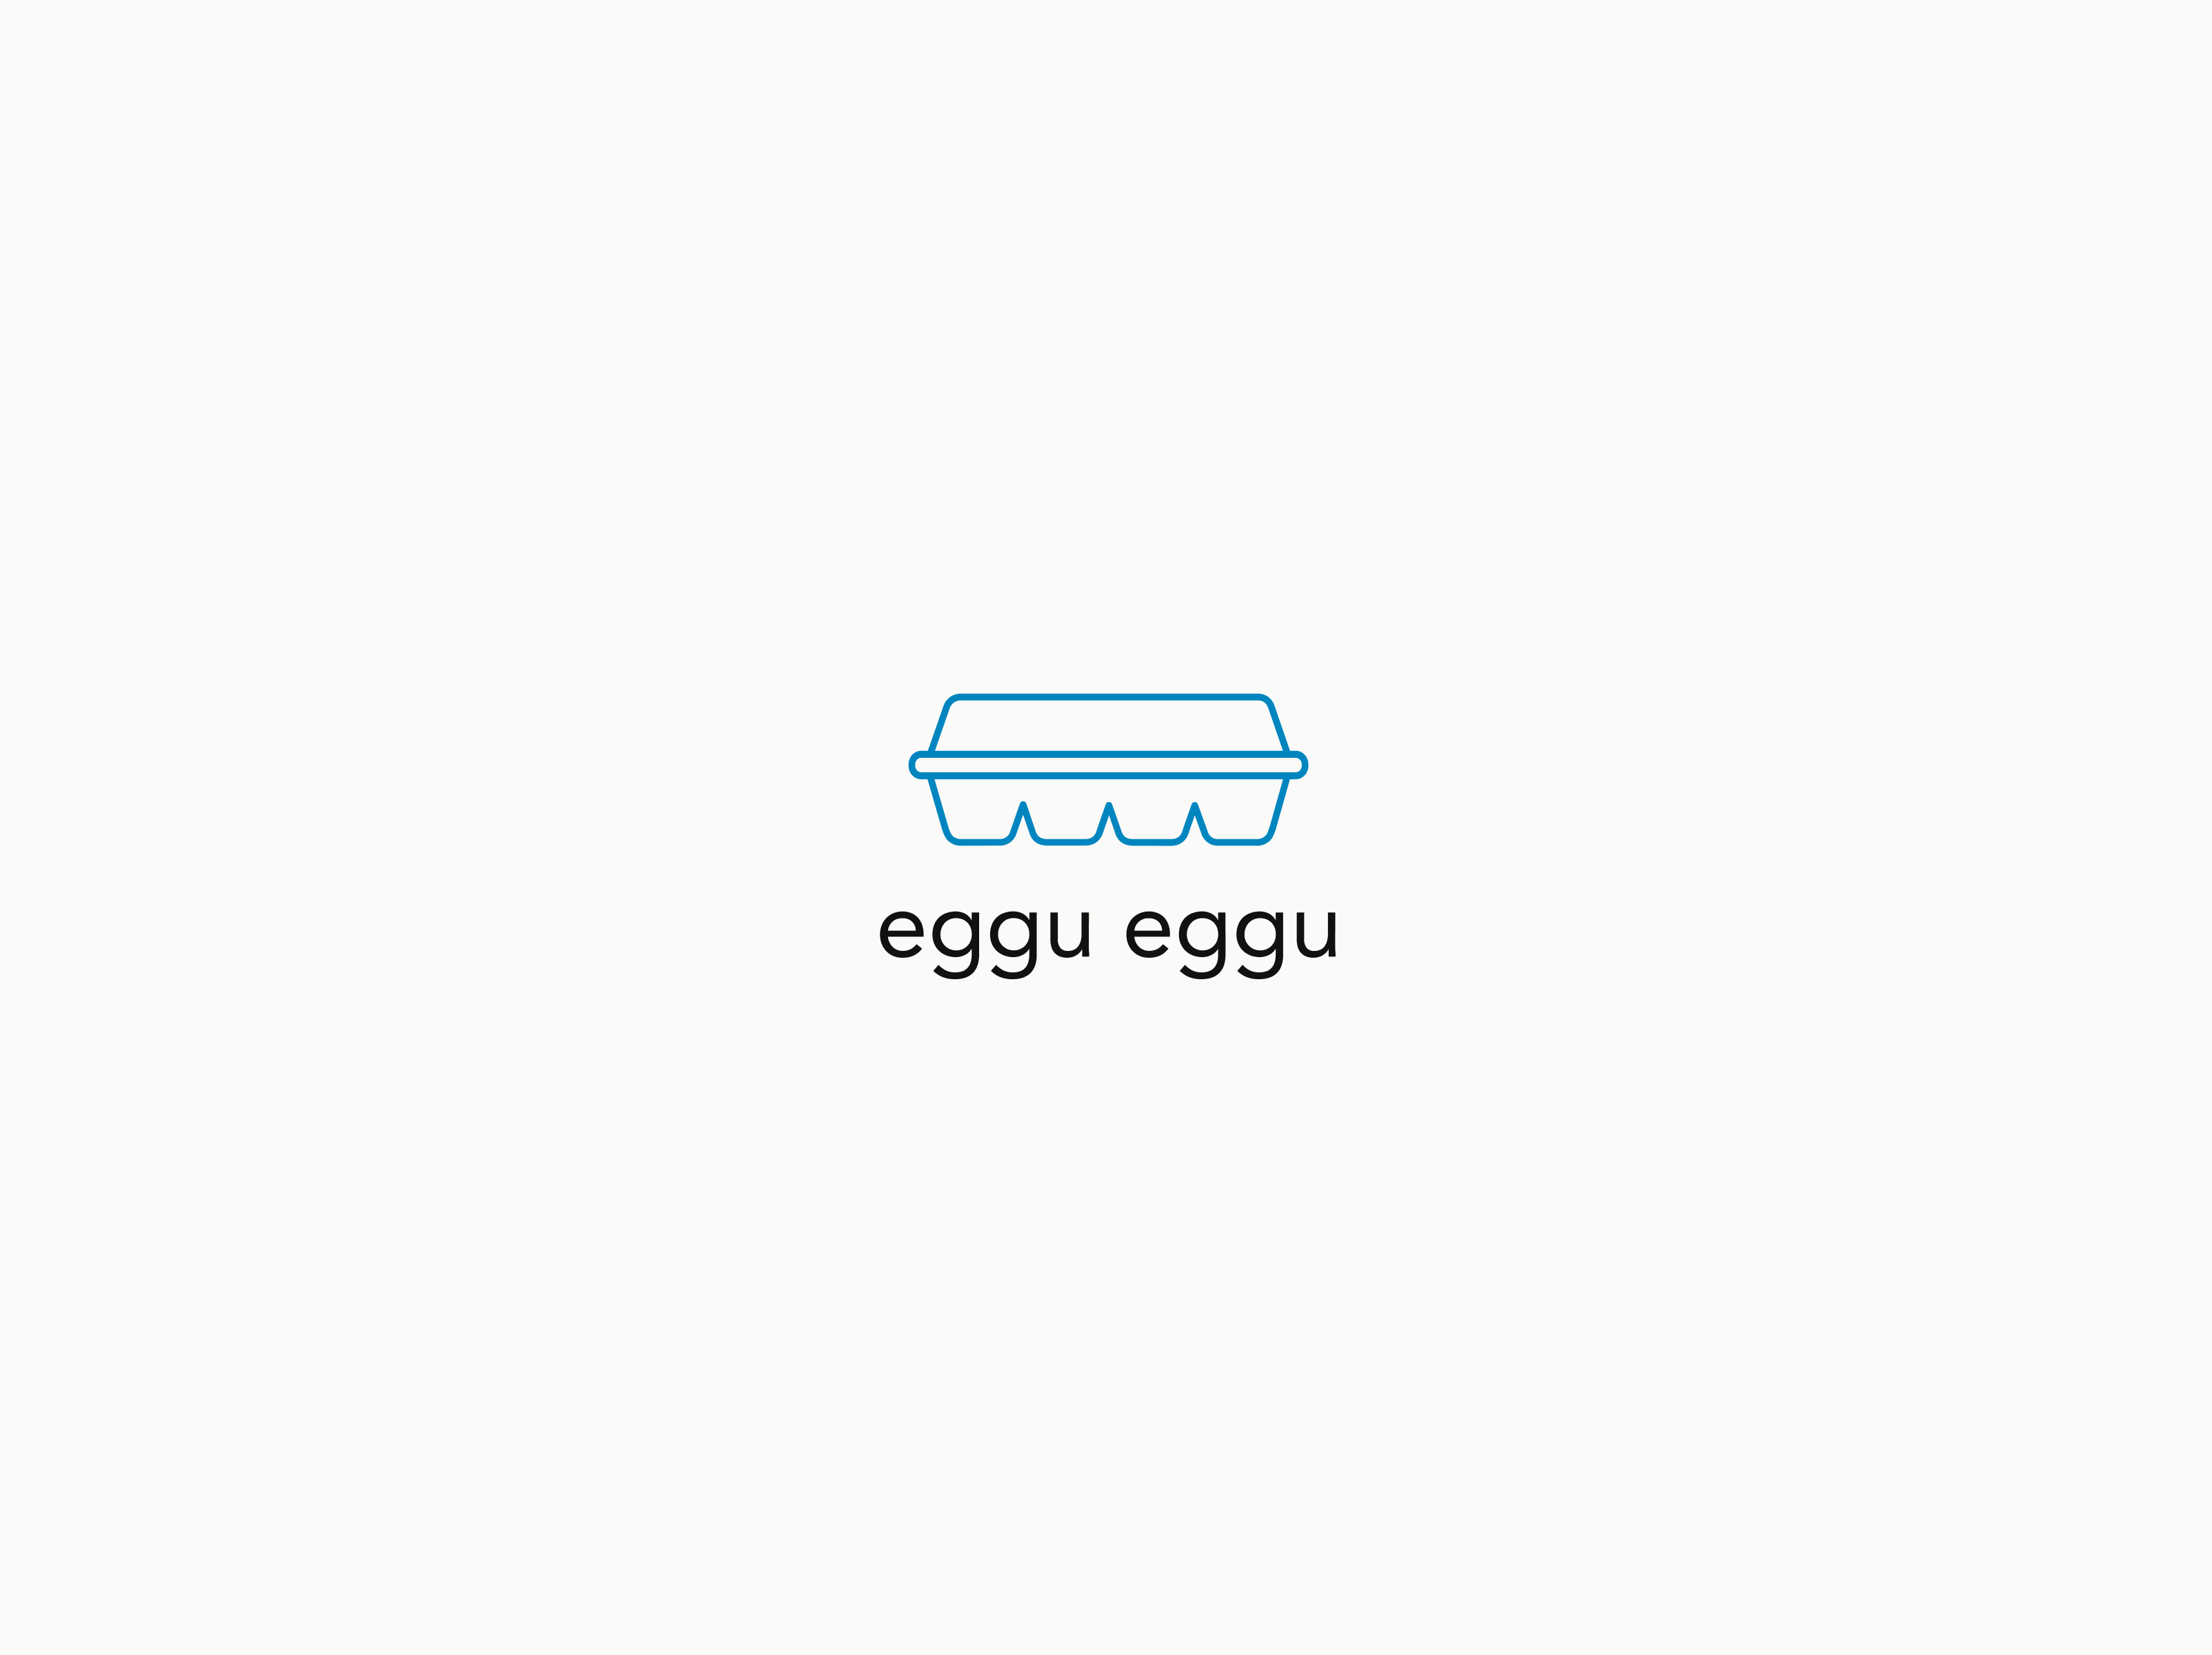 An image of the eggu eggu logo, which is an abstract carton of eggs vector.